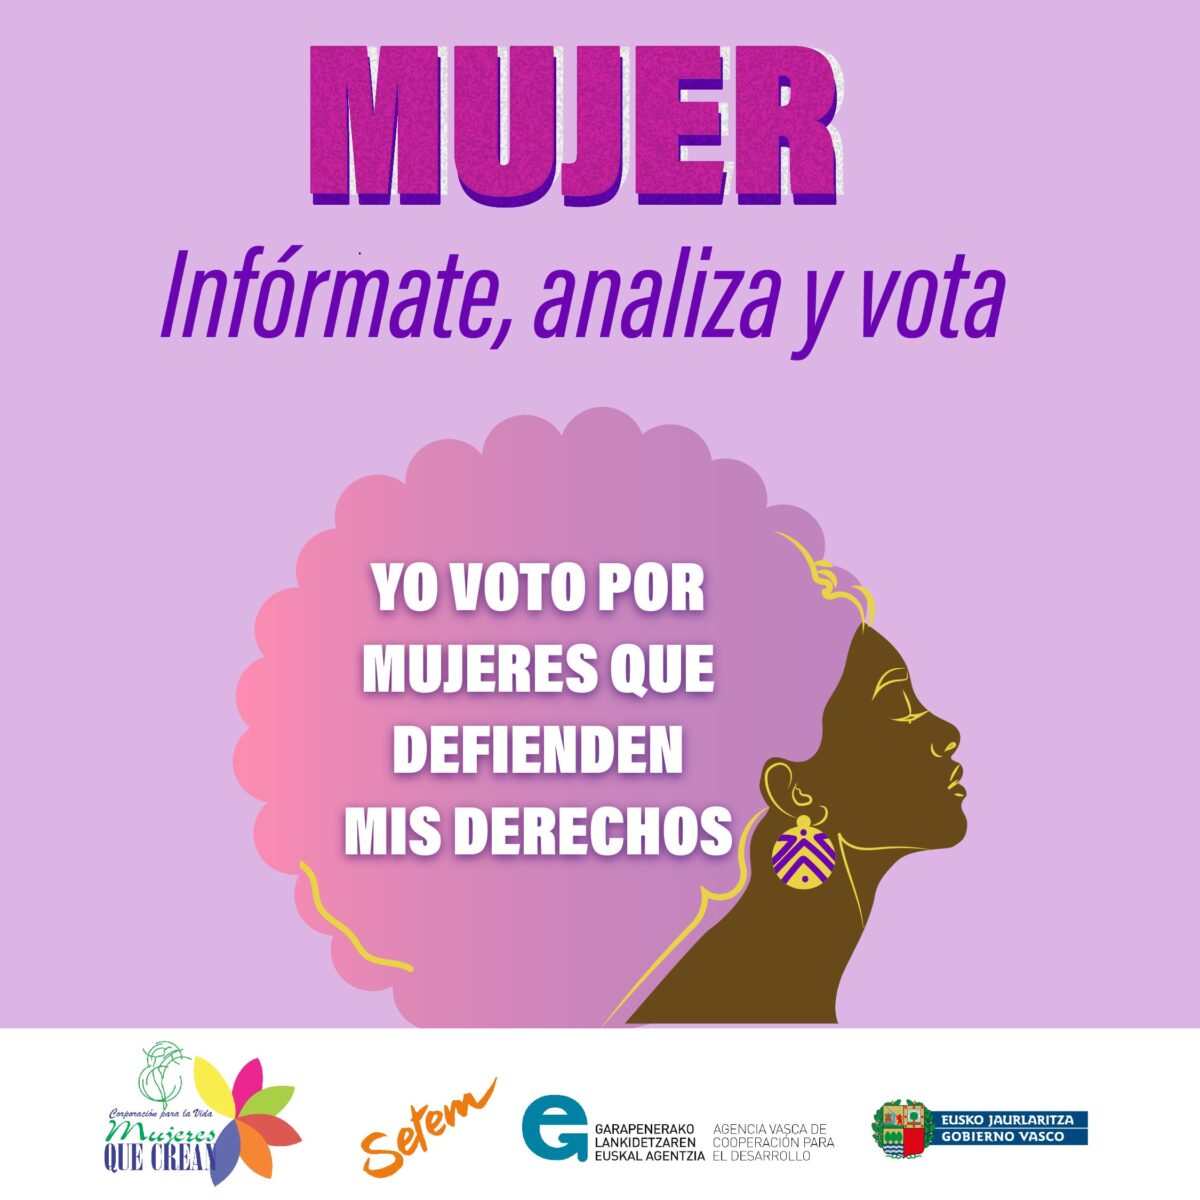 Yo-Voto-por-mis-derechos-mujeres-que-crean-Mujeress02